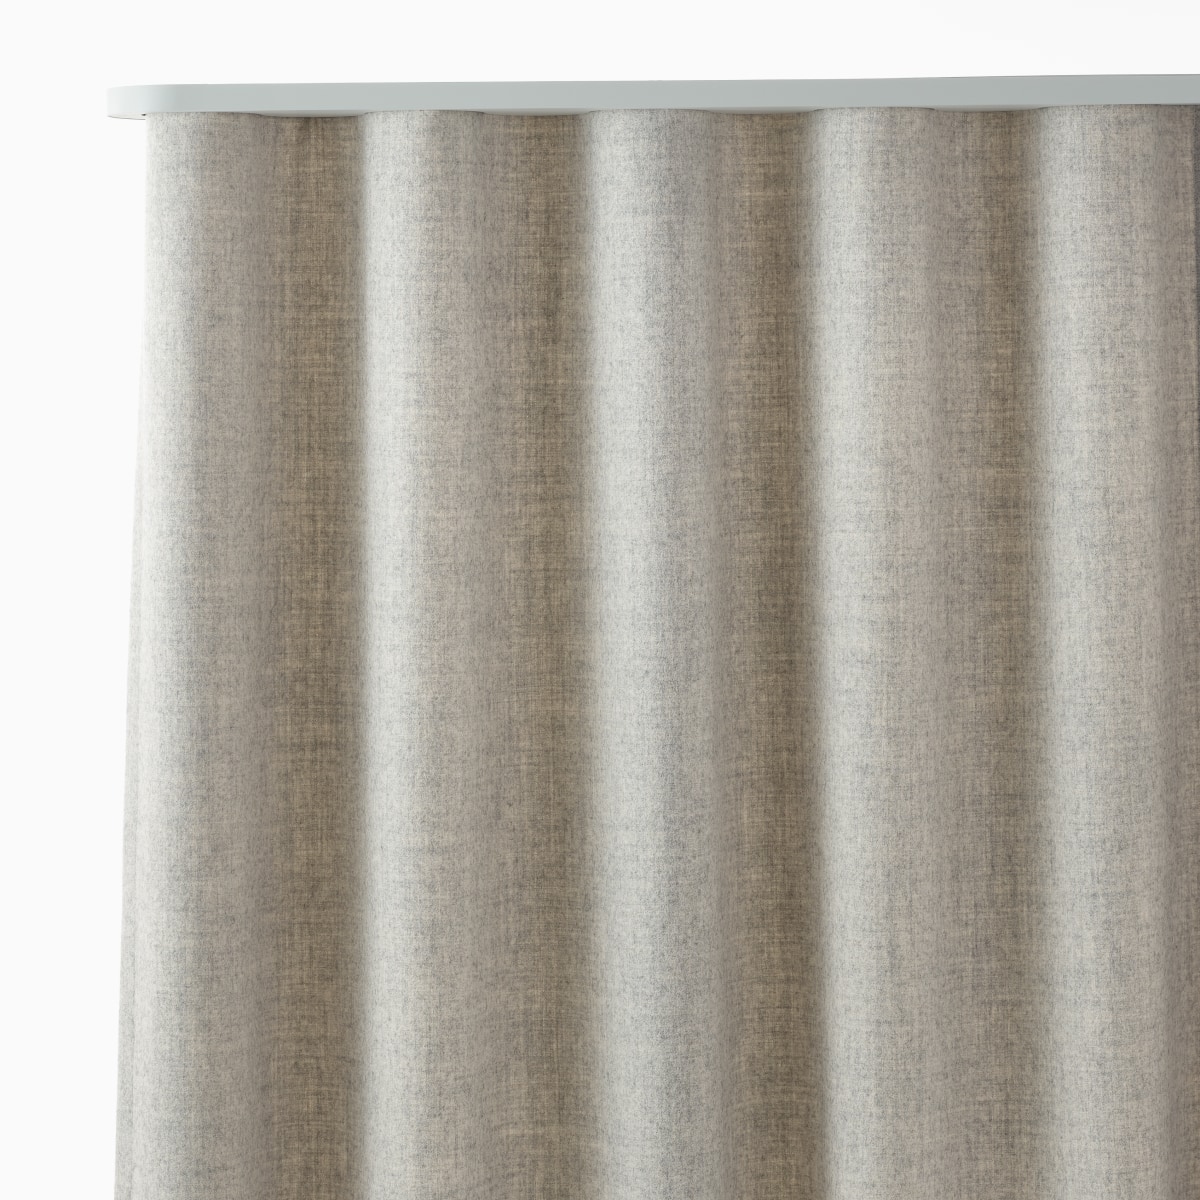 Detalle de una cortina independiente OE1 de color marrón claro, vista desde arriba y de frente.